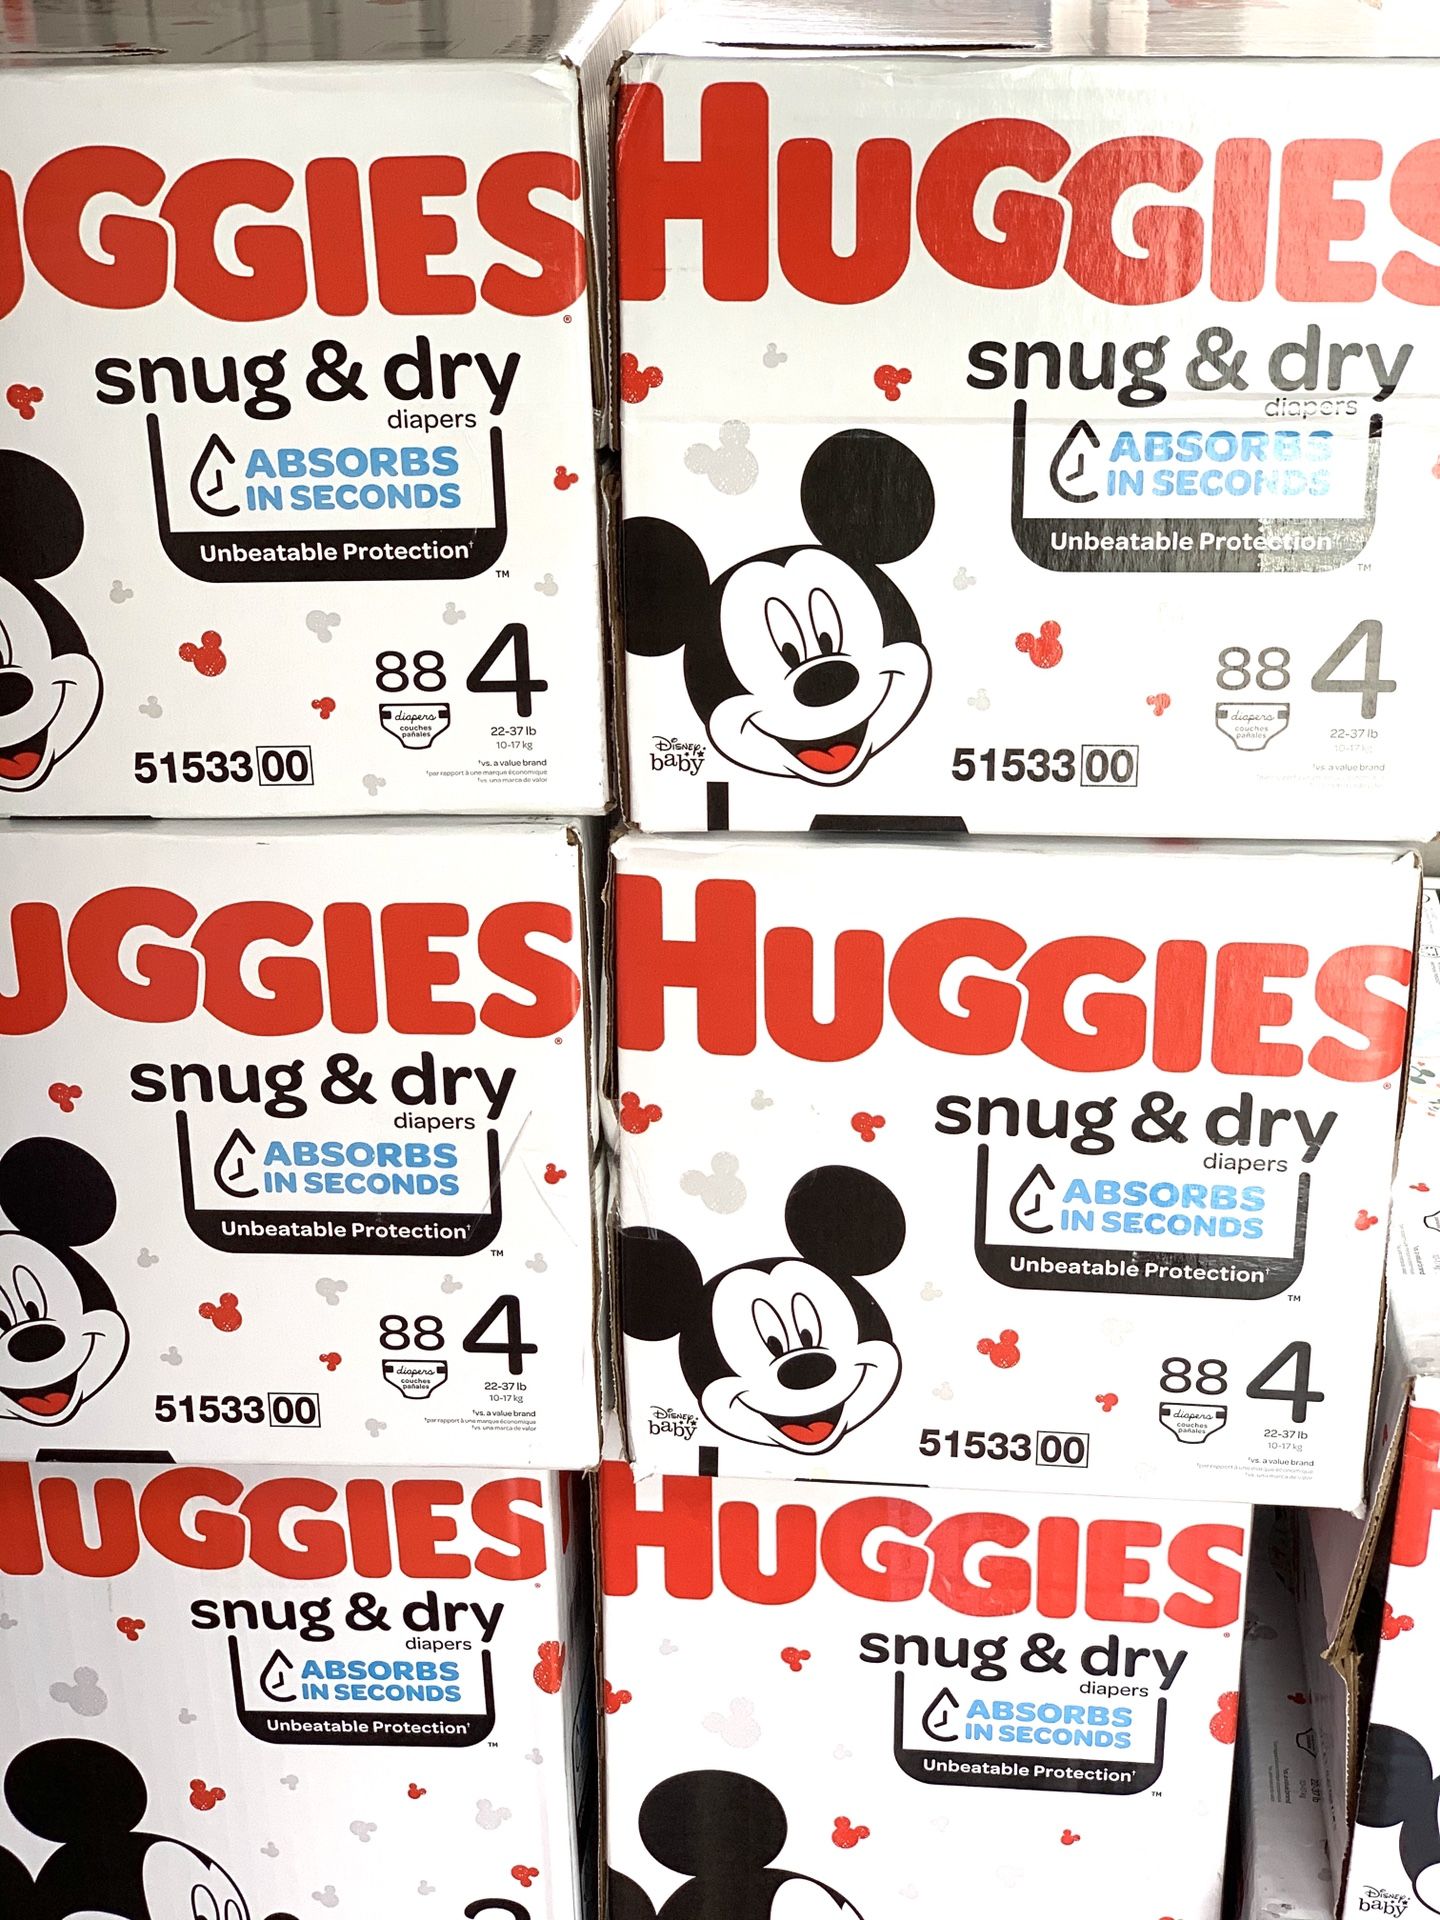 Huggies Snug dry size 4(88) diapers $24 per box